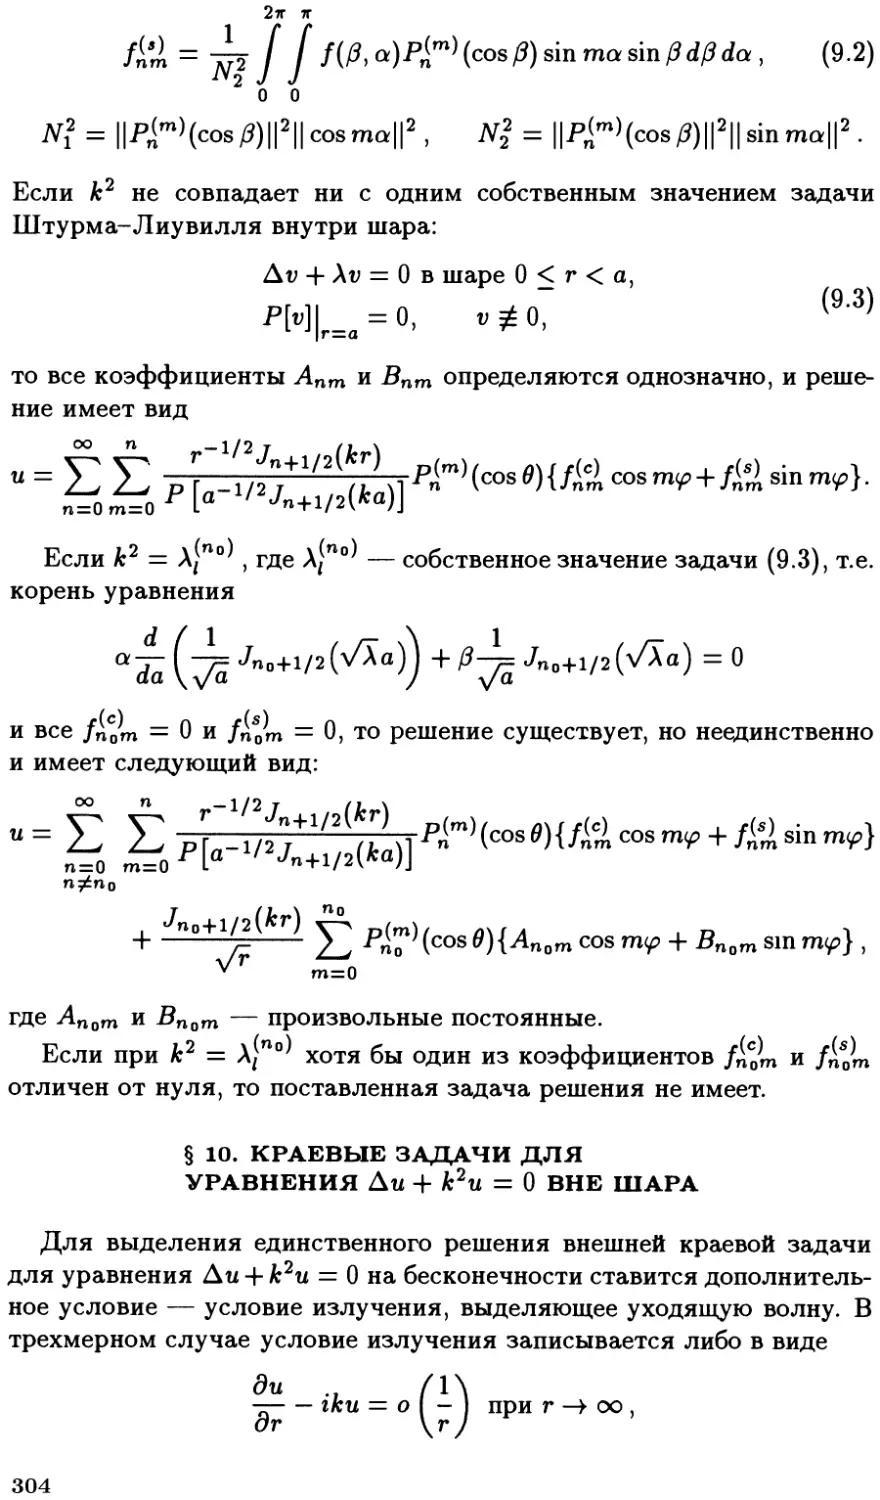 §10. Краевые задачи для уравнения $\Delta u + k^2 u = 0$ вне шара